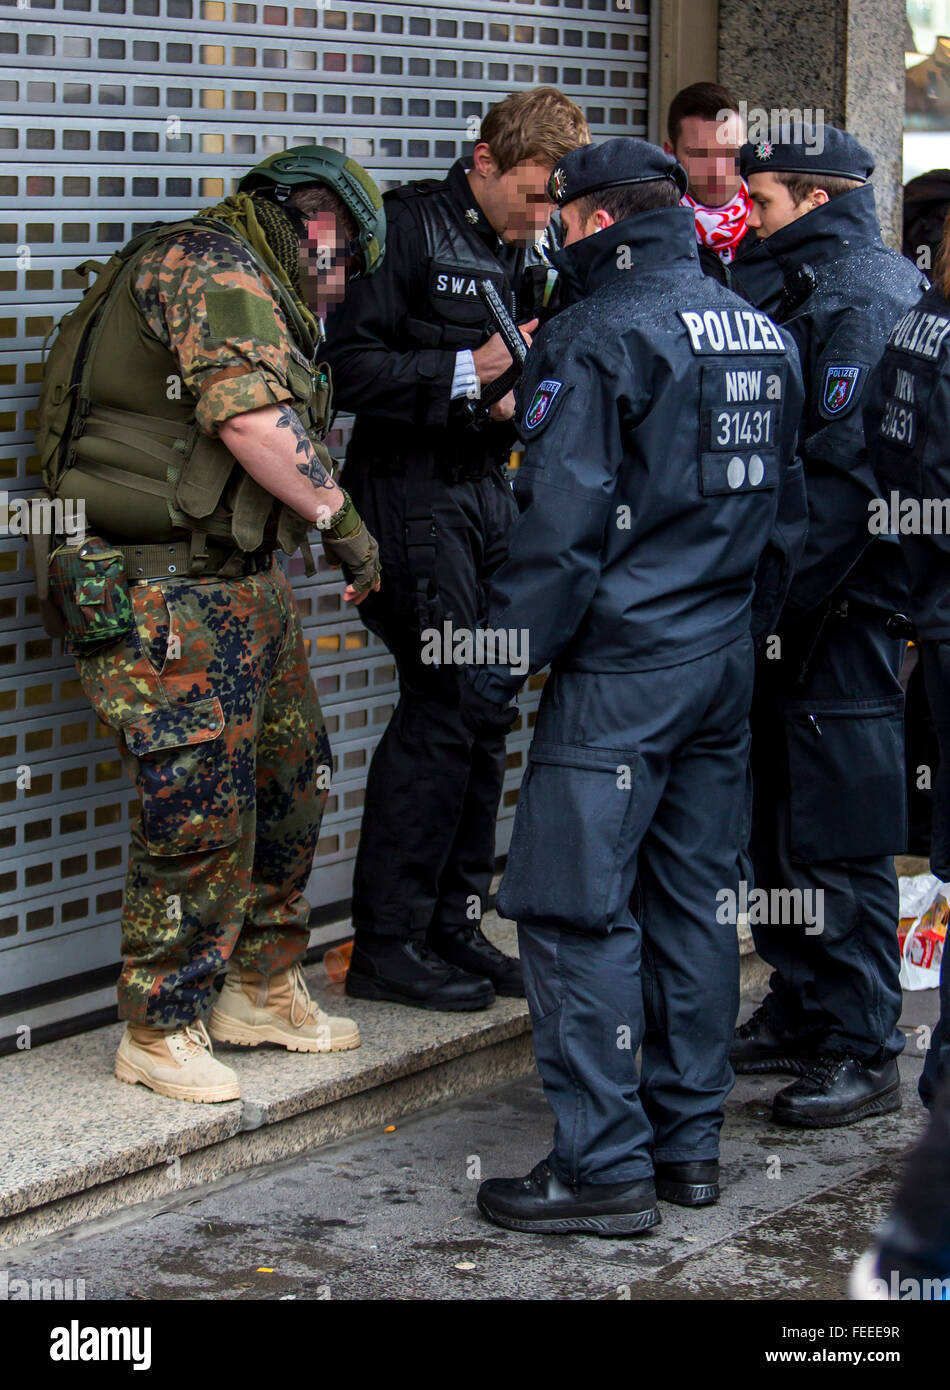 La polizia in servizio durante street festa di carnevale a Colonia, Germania, il Berlingaccio, Foto Stock